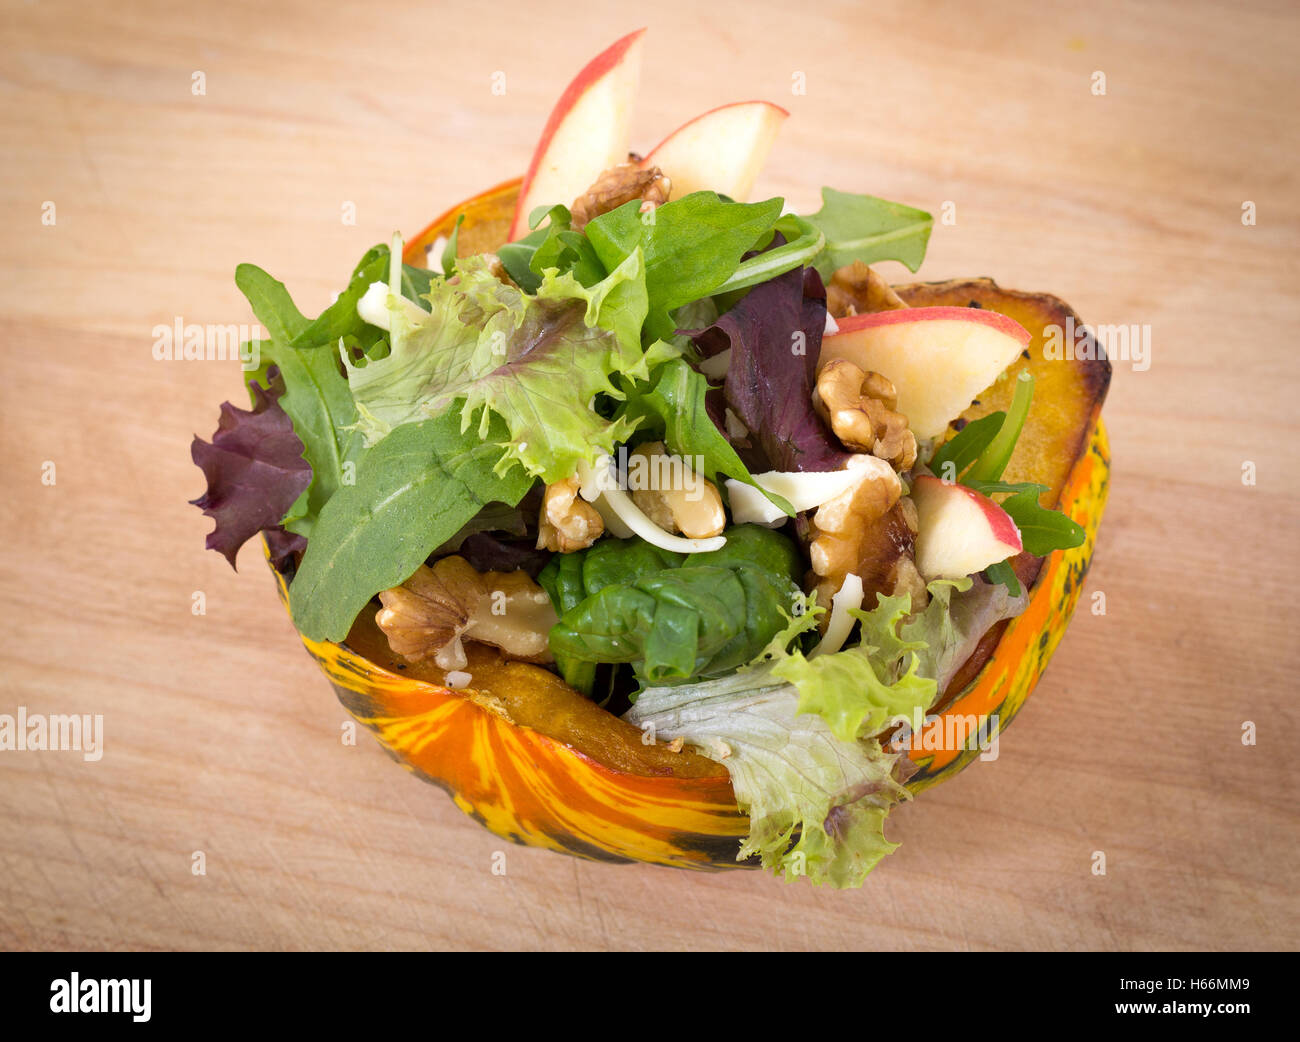 Carnaval farci avec de la courge salade noix apple sur table en bois libre studio shot Banque D'Images